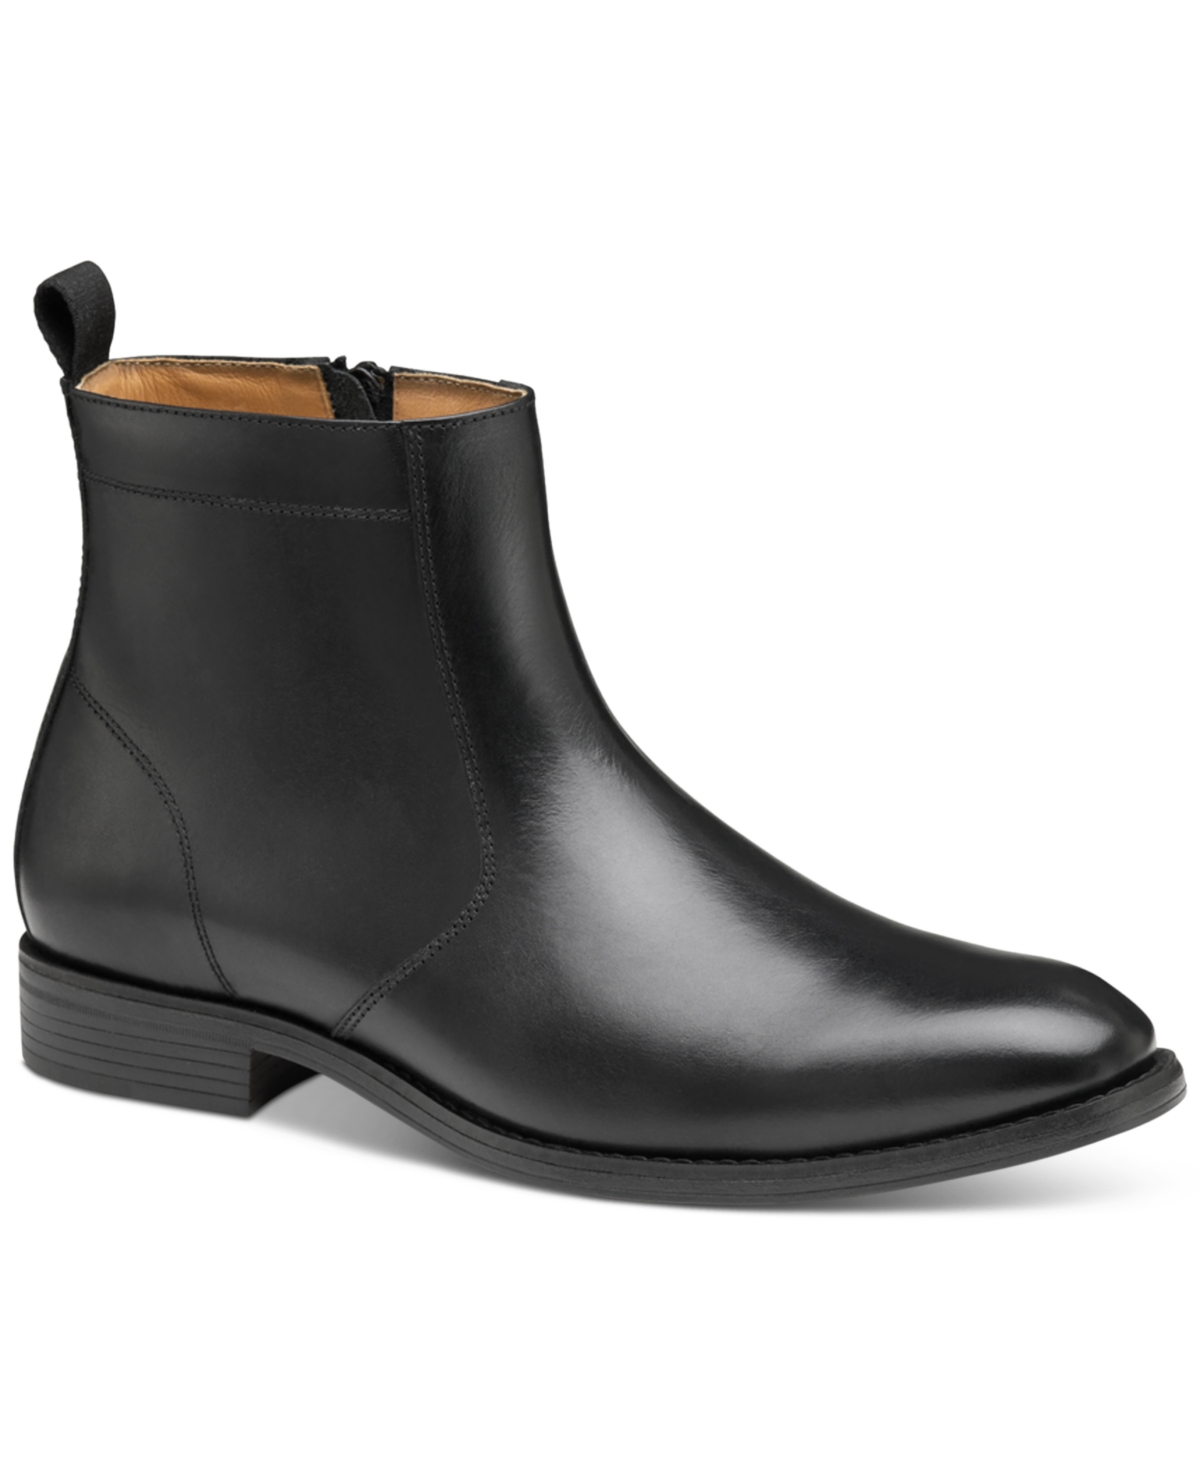 Men's Lewis Zip Boots - Black